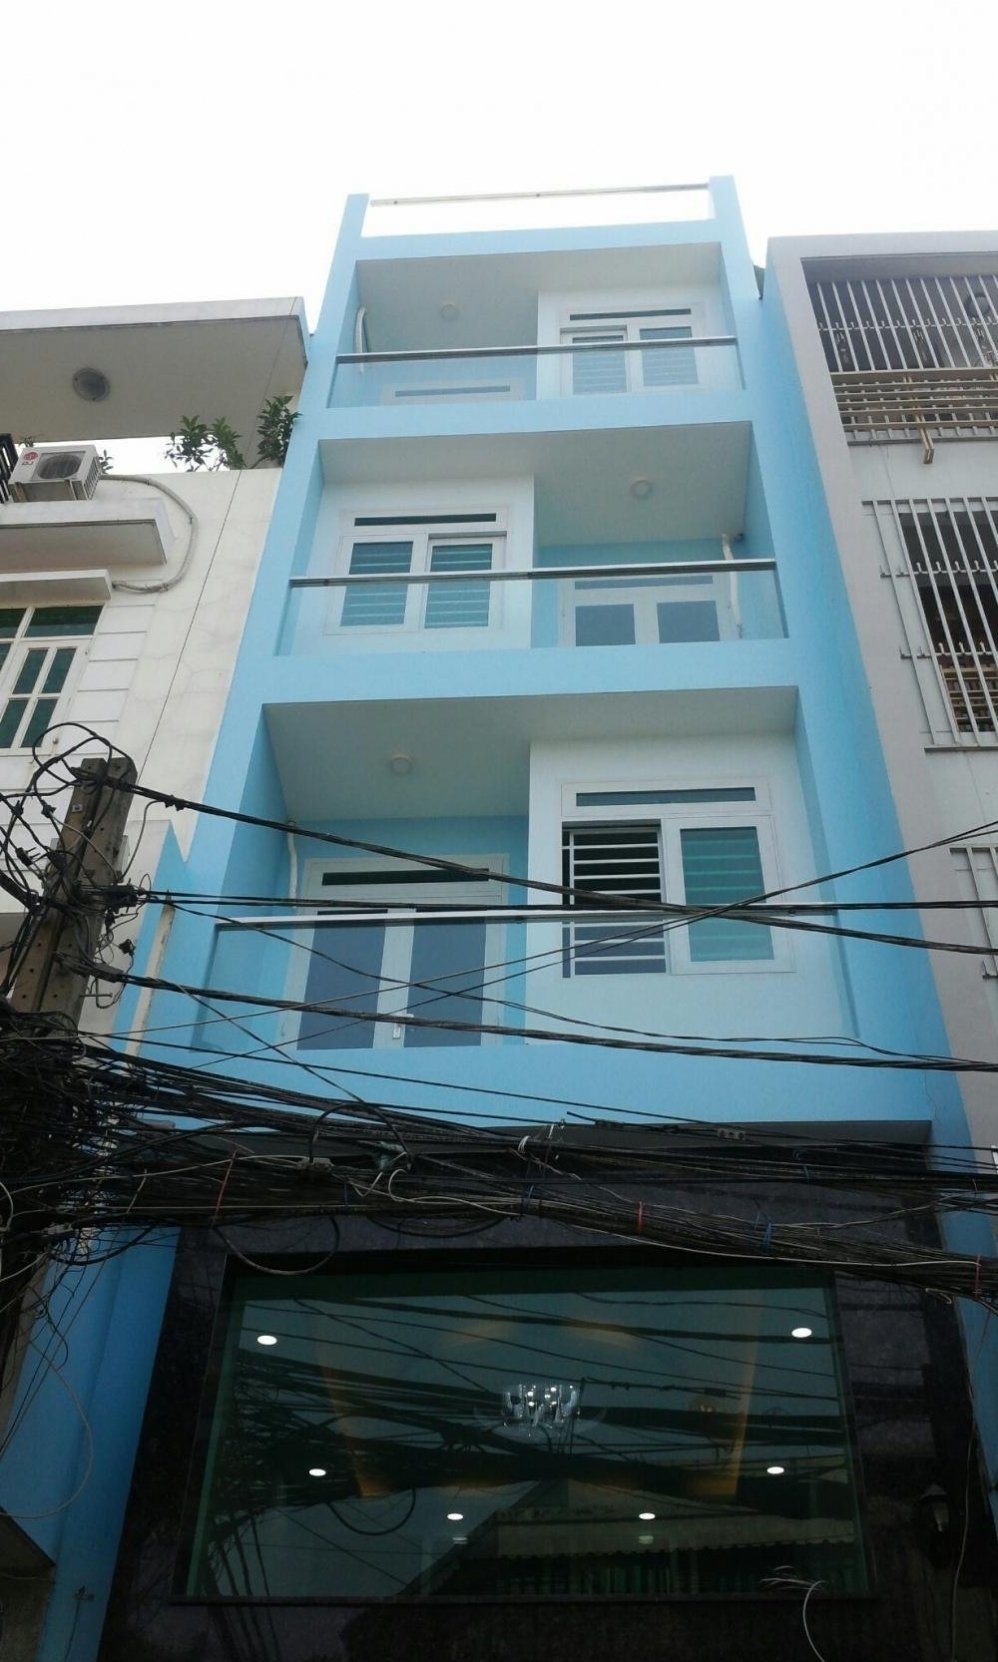  Bán nhà góc 2 mặt tiền Trần Hưng Đạo, phường 2, quận 5. DT: 9x17m hợp đồng thuê 150 triệu/tháng